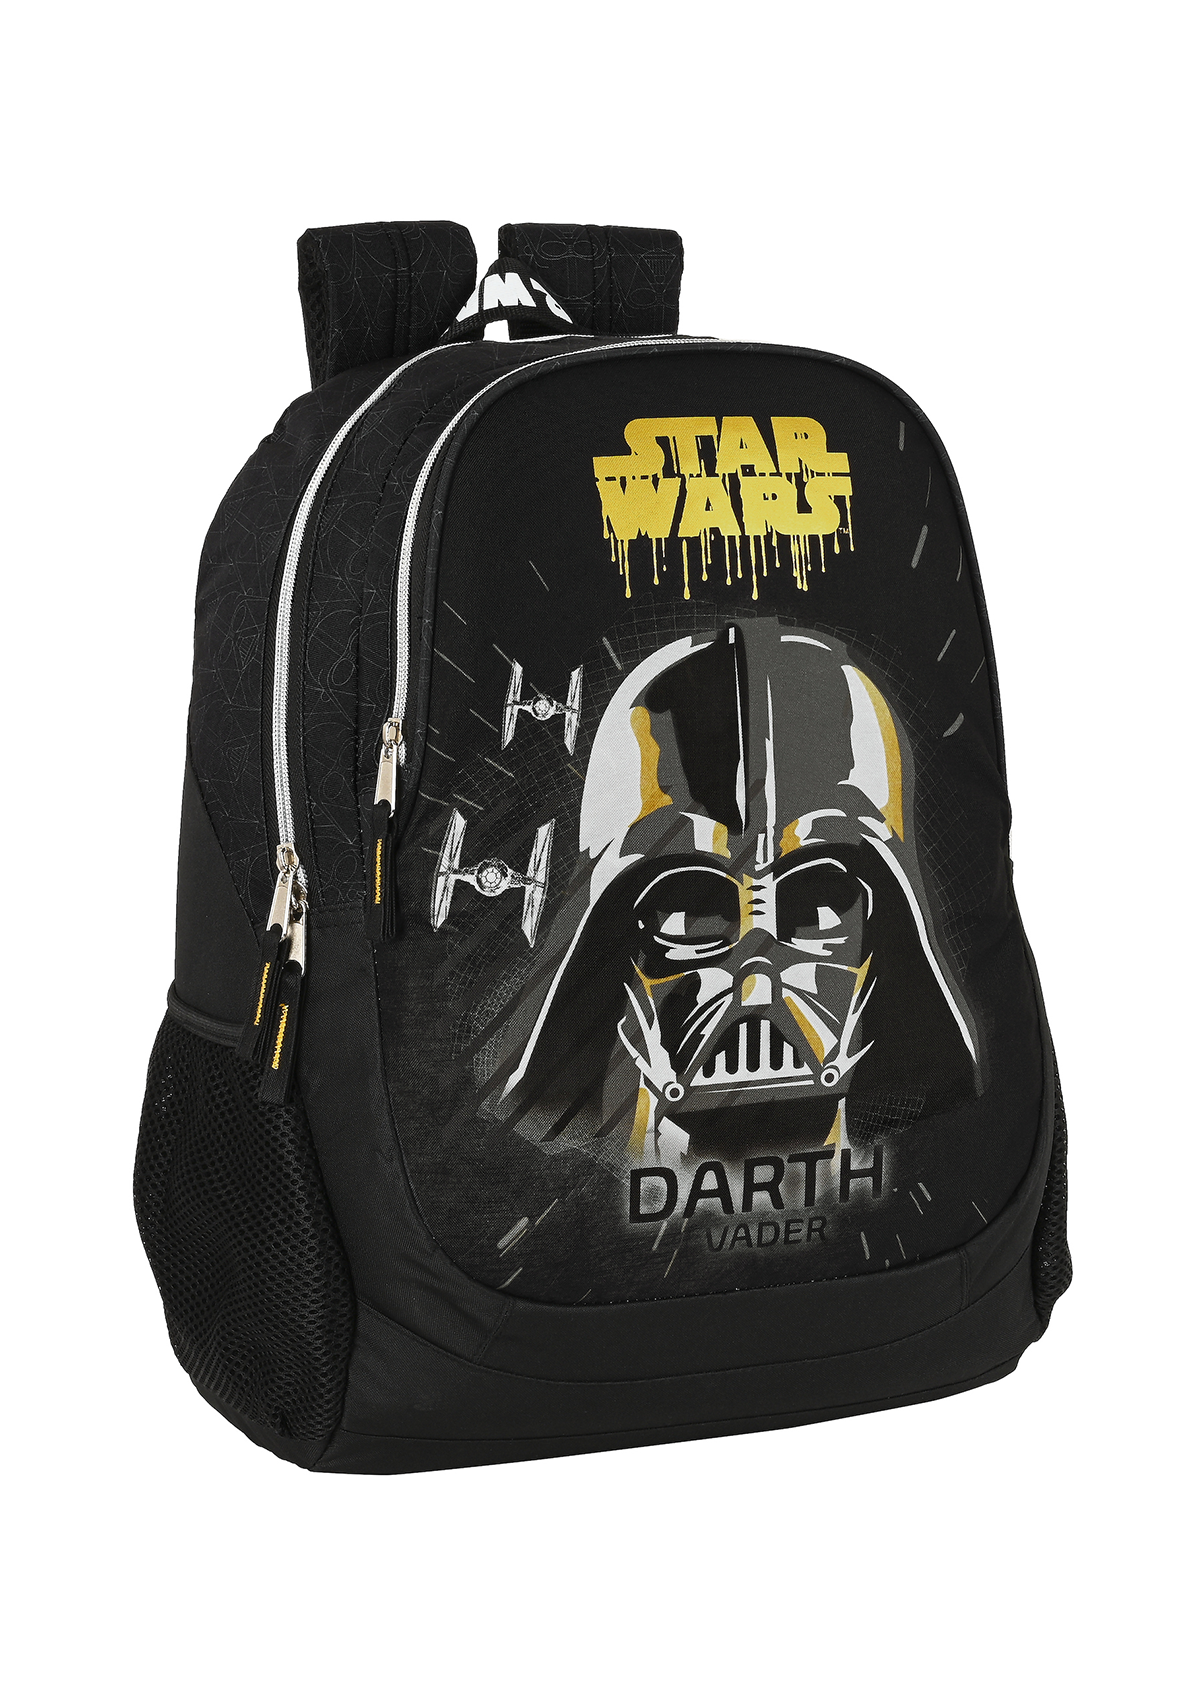 Star Wars Fighter Large Backpack